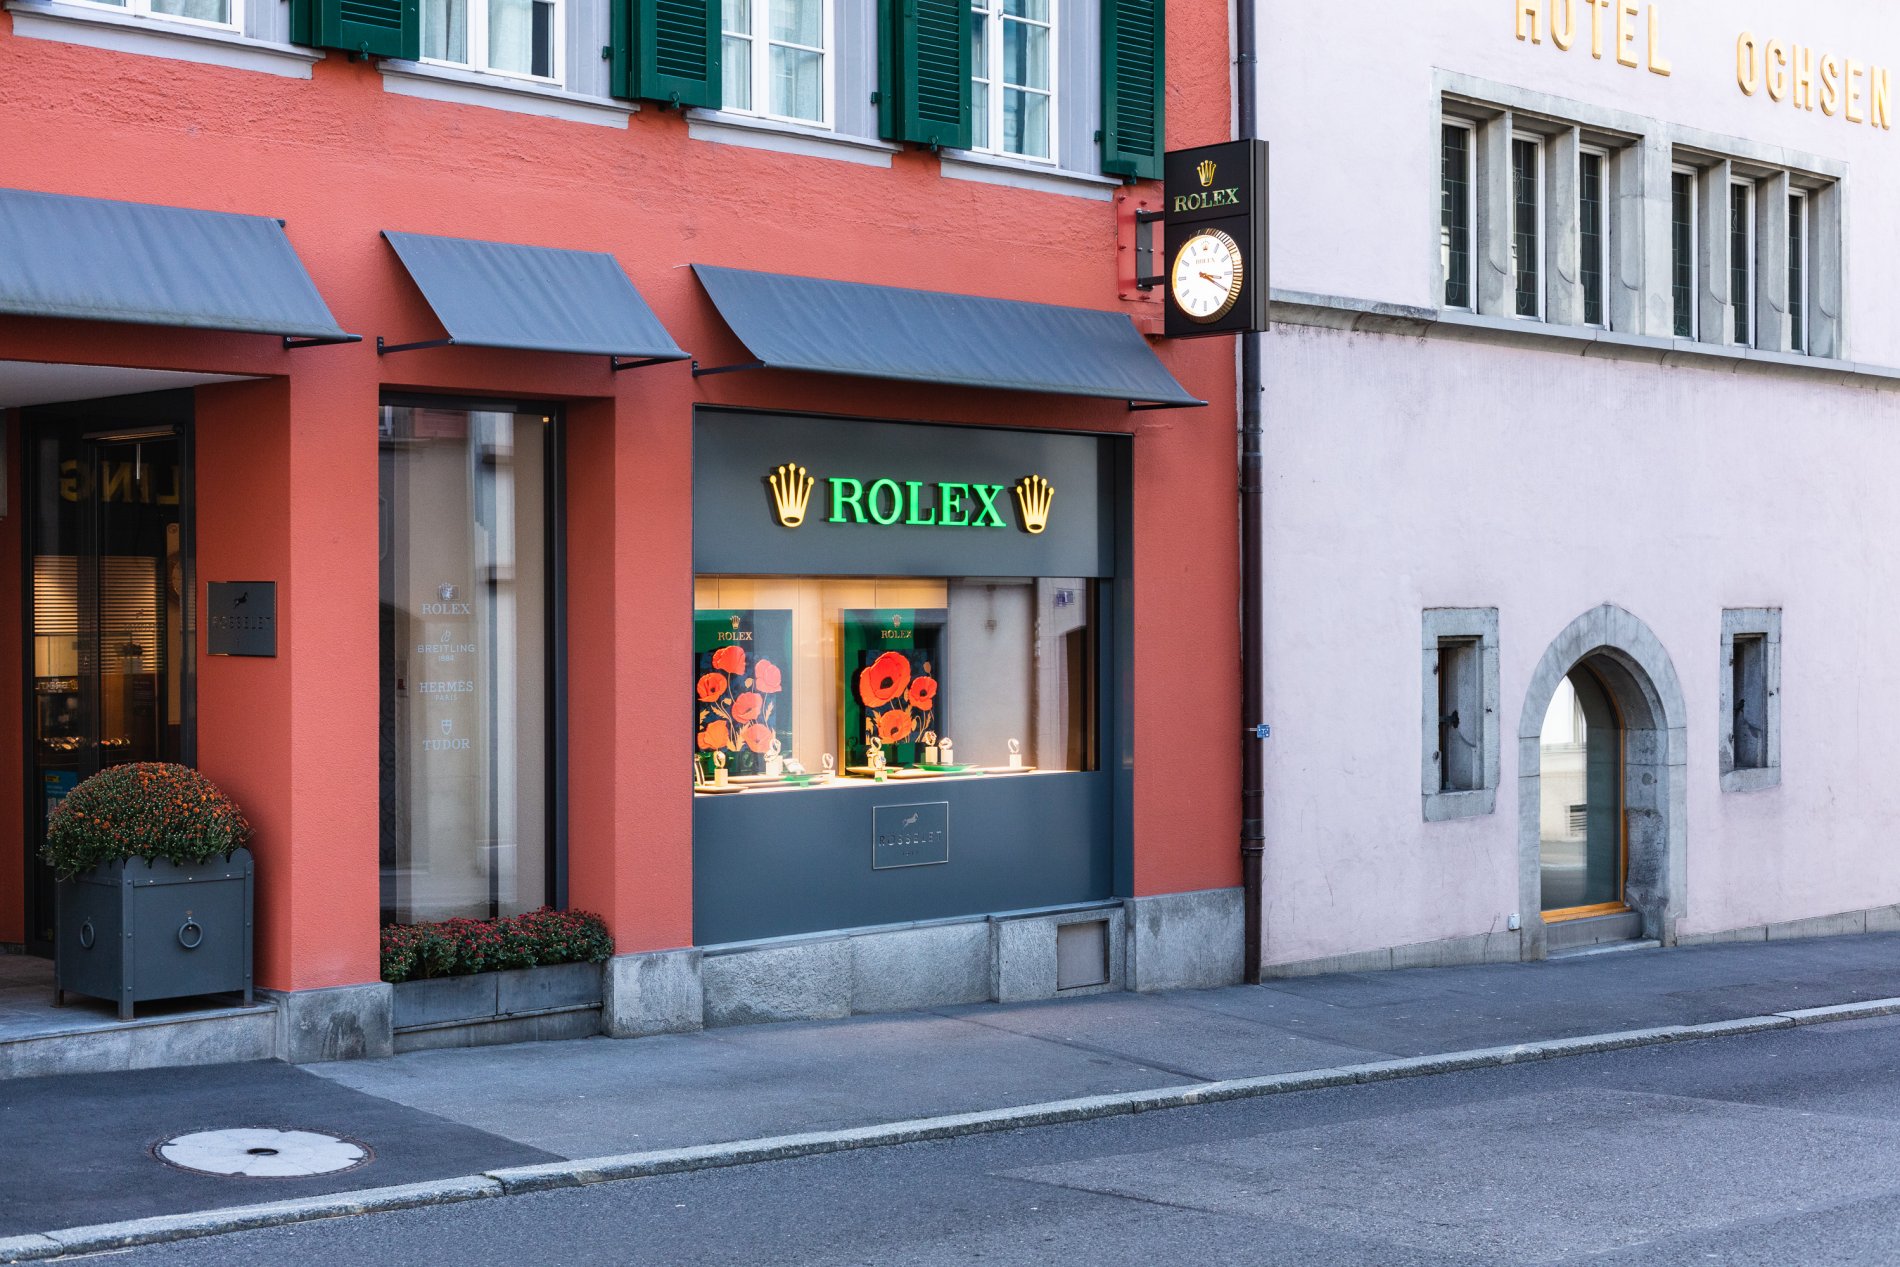 Rösselet- das Traditionsunternehmen in Zug seit 1911 für Uhren und Schmuck.